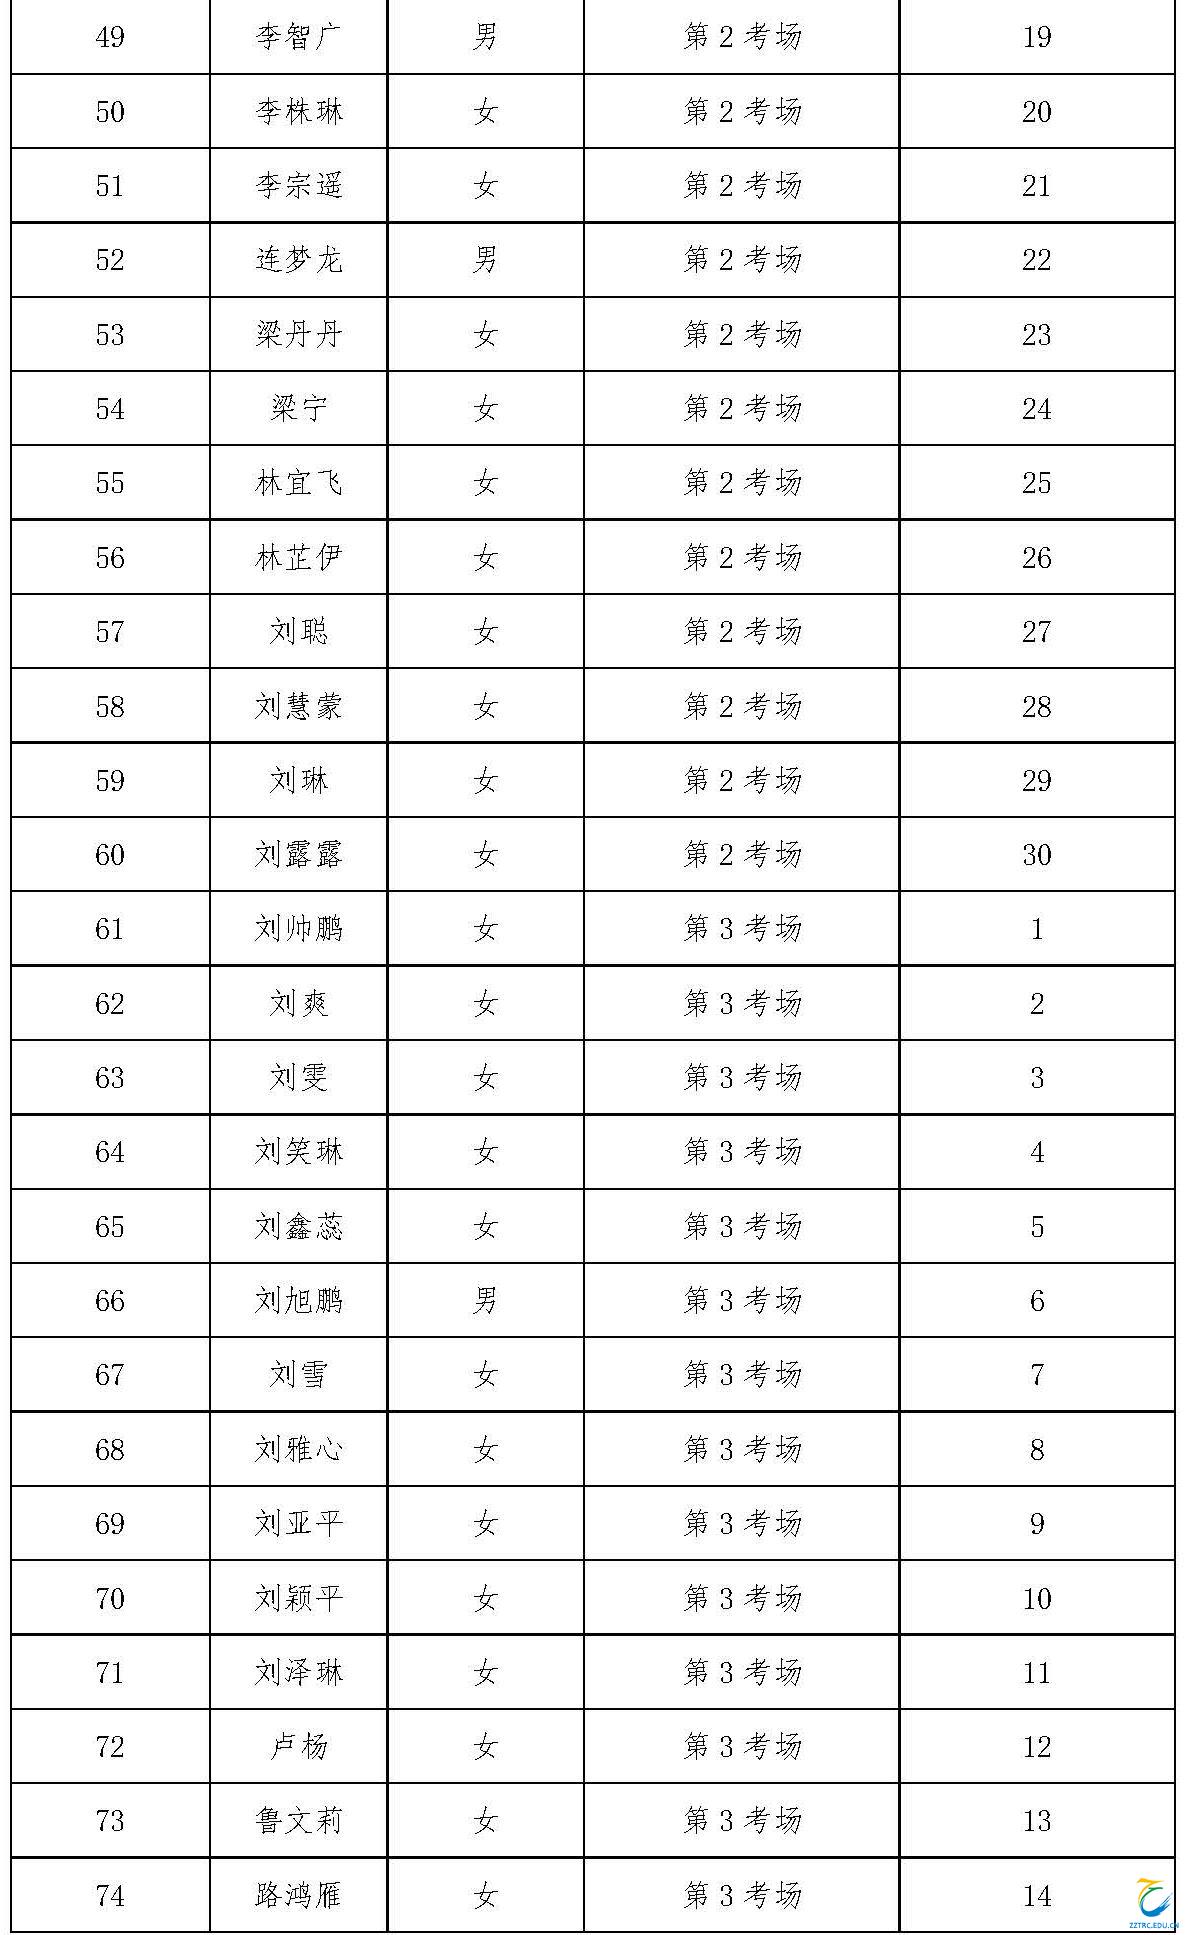 赤峰市公安局 赤峰市公安局领导班子_赤峰市公安局人员名单